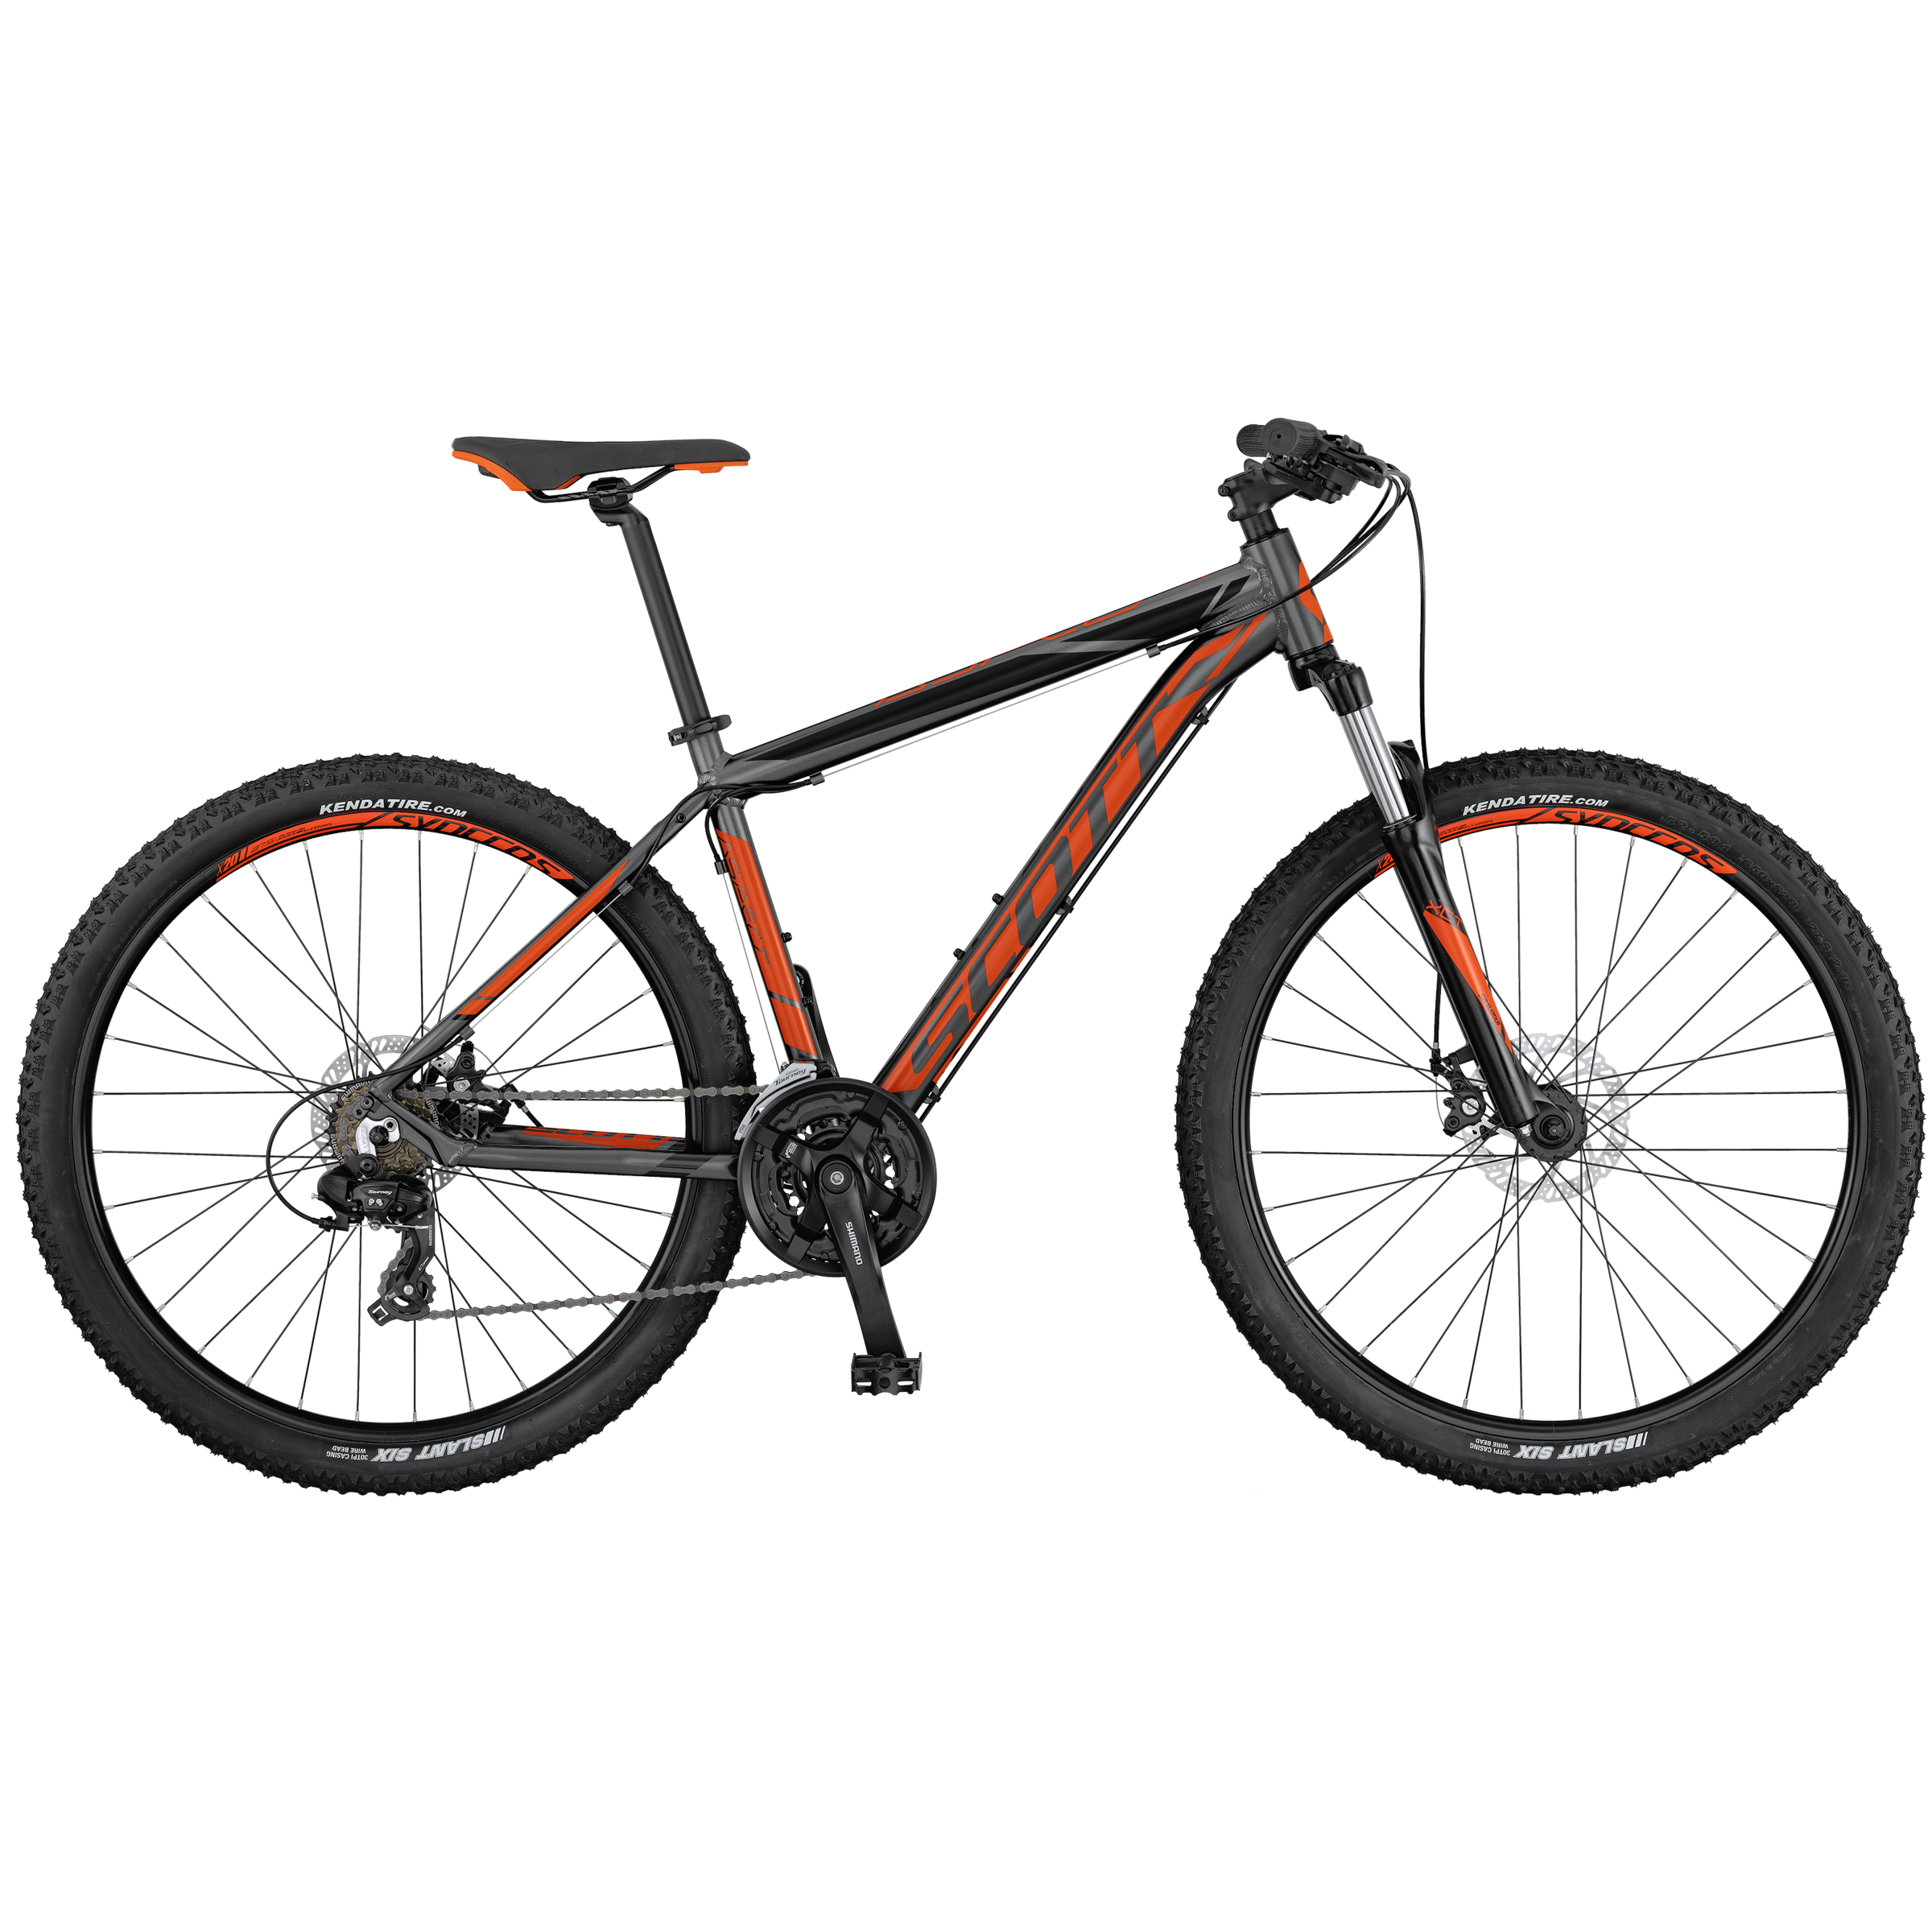 2017 Scott aspect 970 - Bicycle Details 